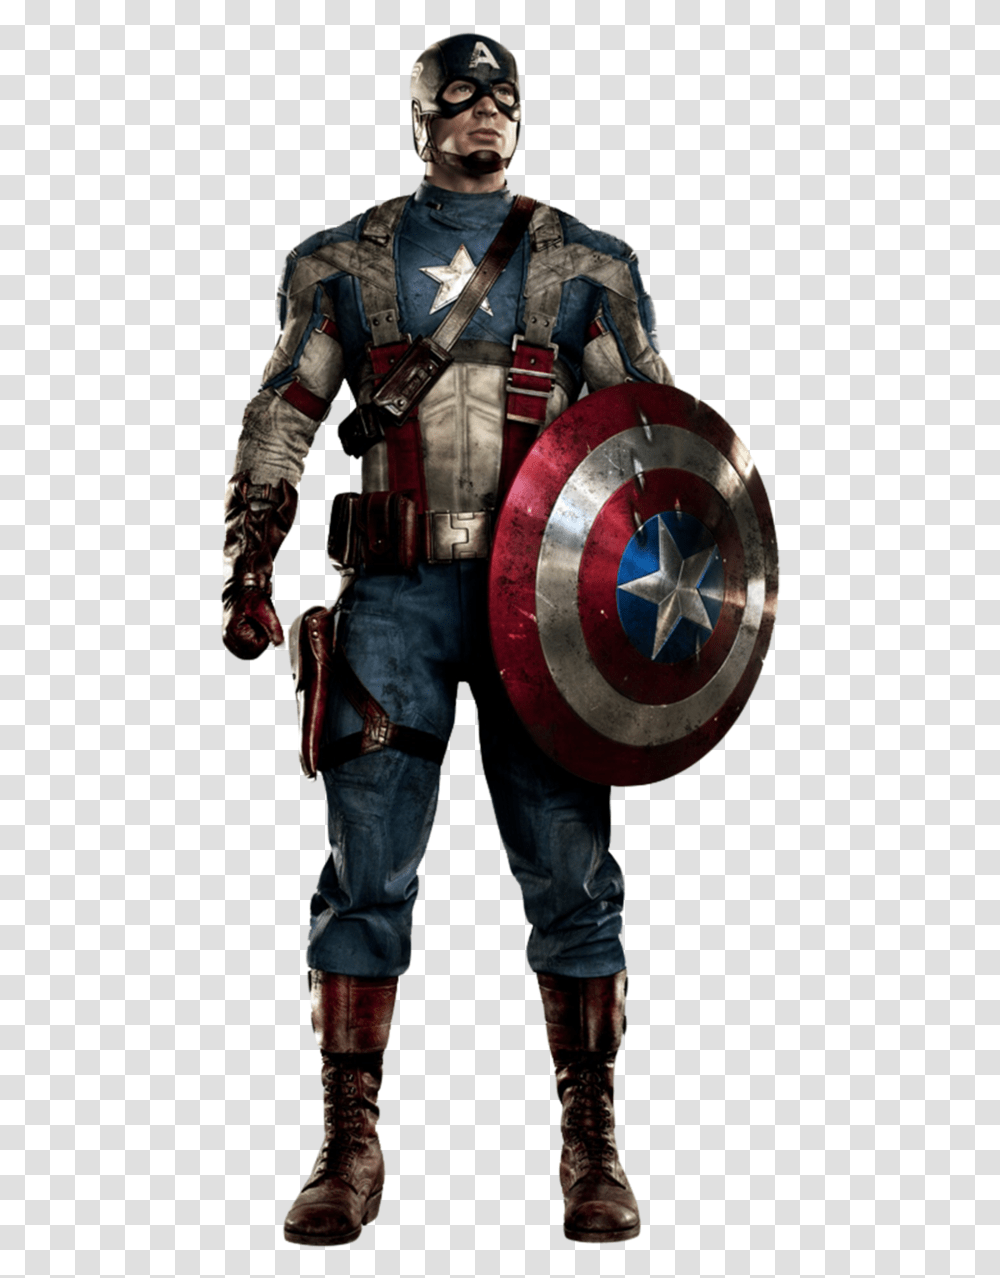 Captain America Background Captain America Suit, Person, Human, Armor, Military Uniform Transparent Png